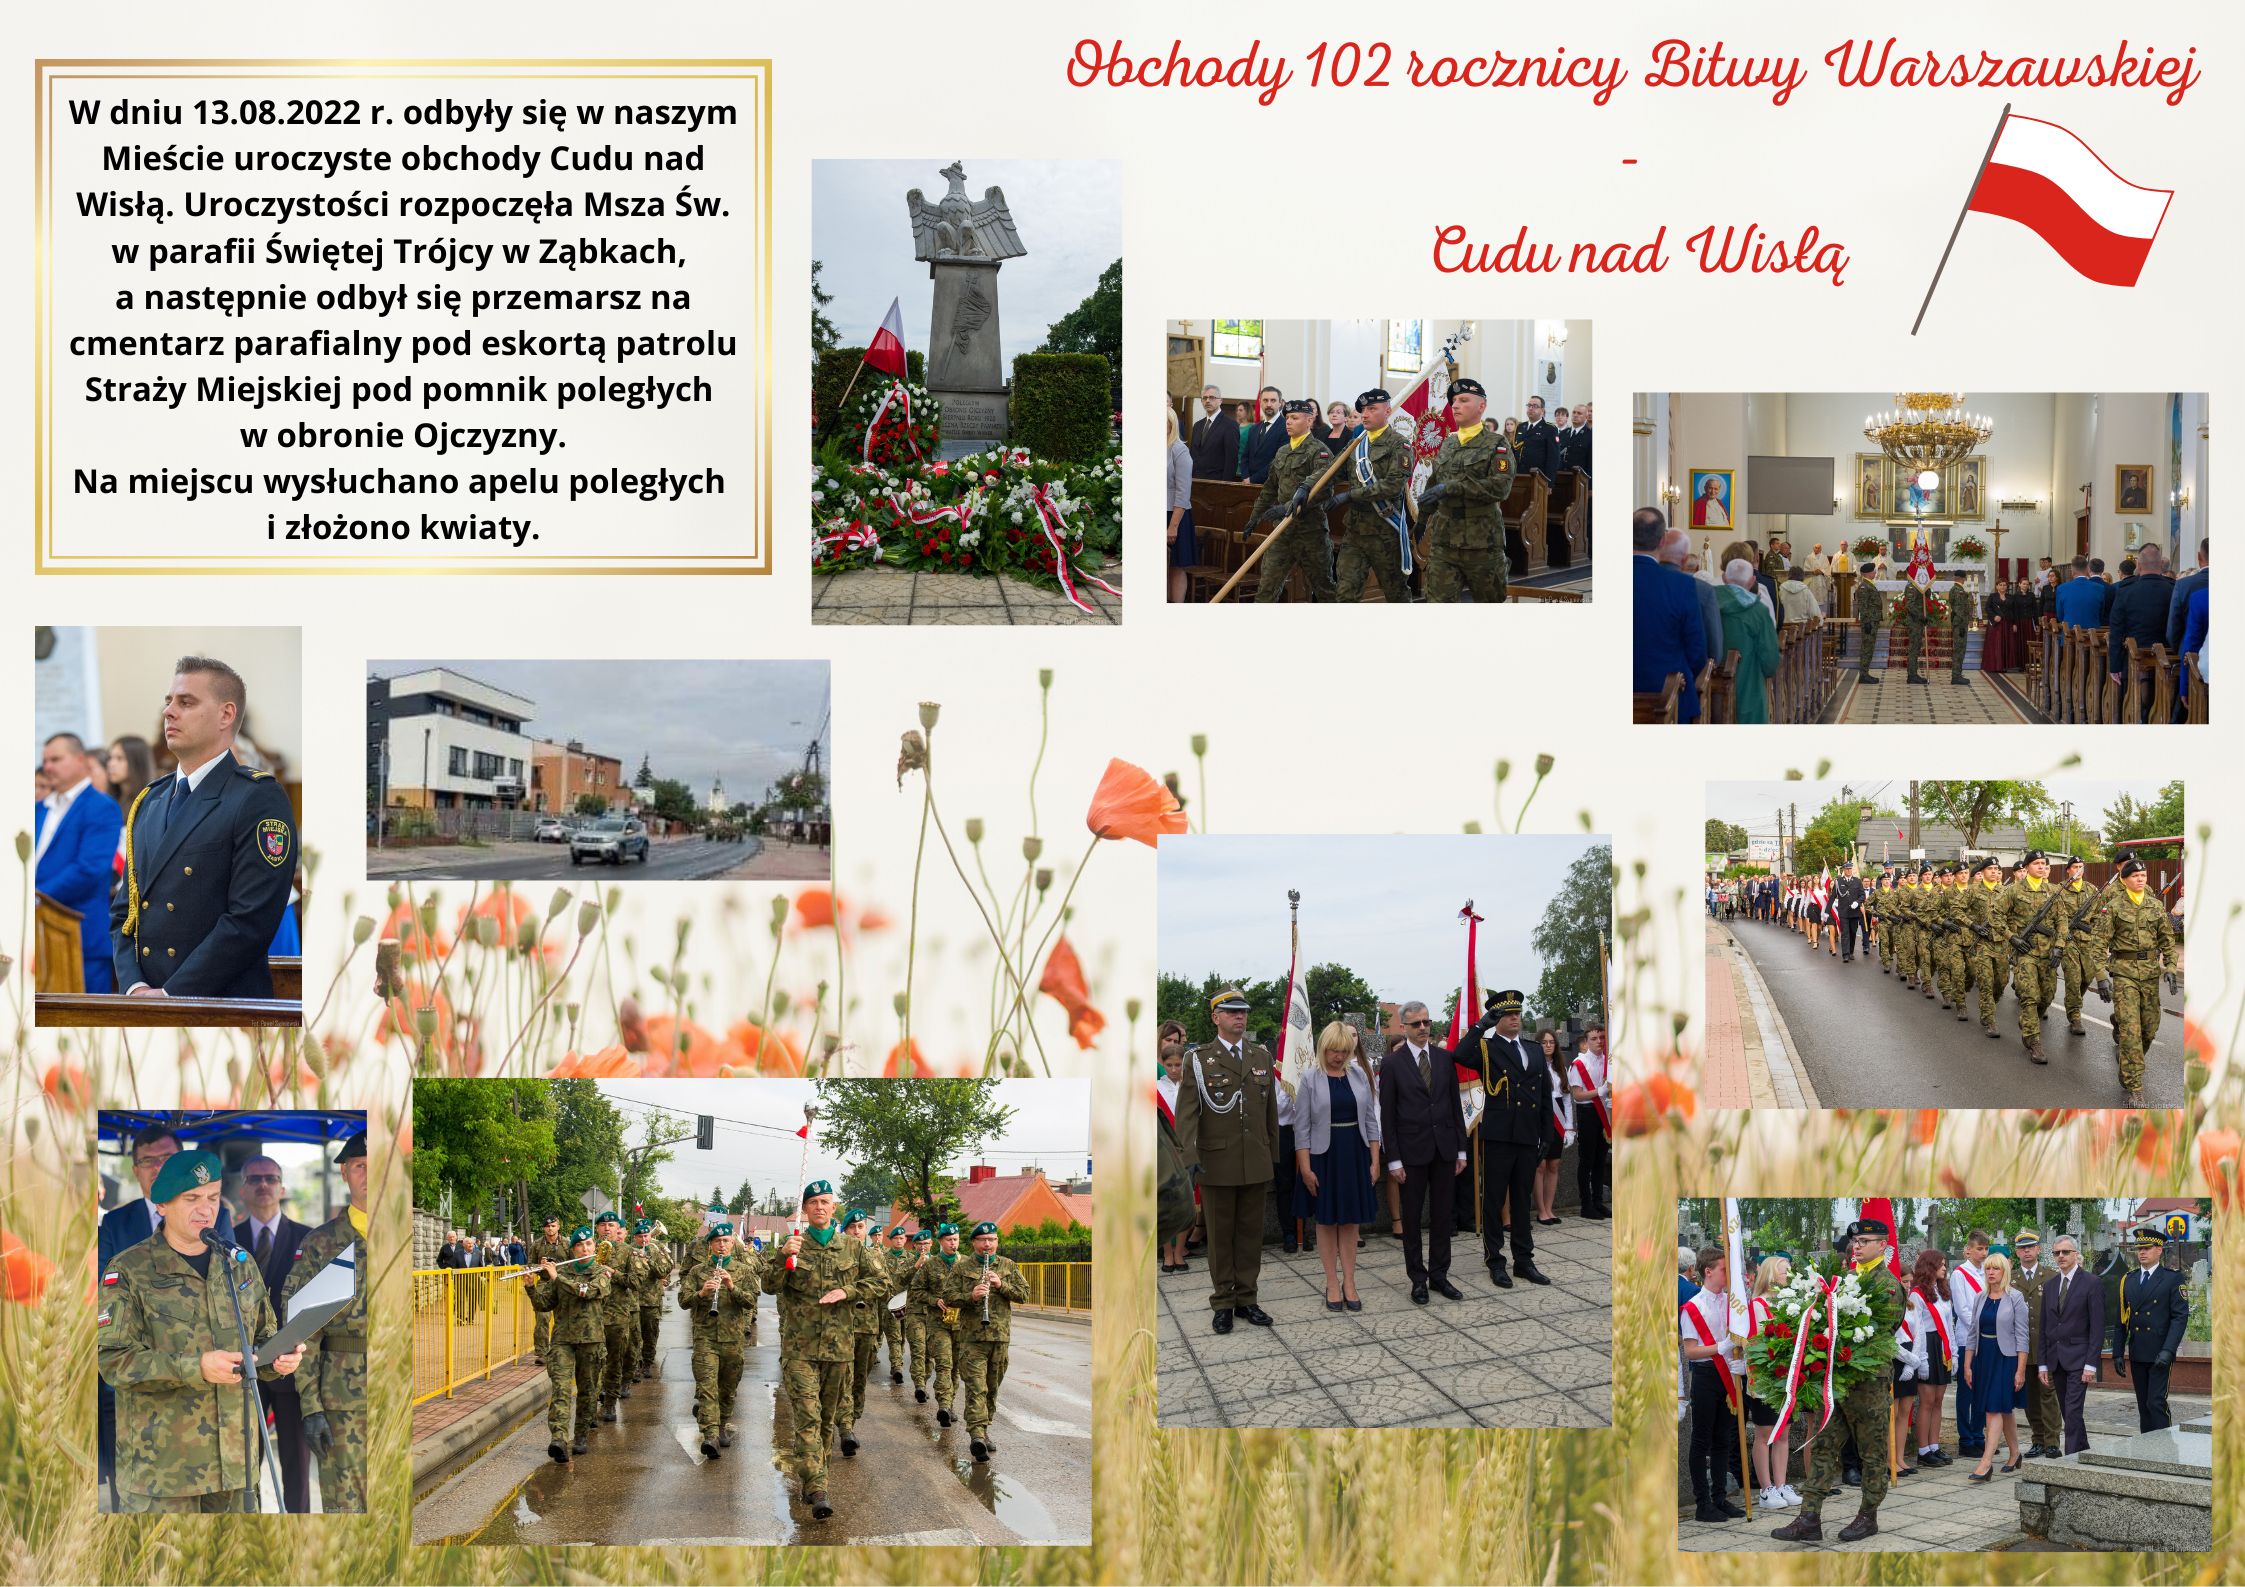 Obchody 102 rocznicy Bitwy Warszawskiej – Cudu nad Wisłą